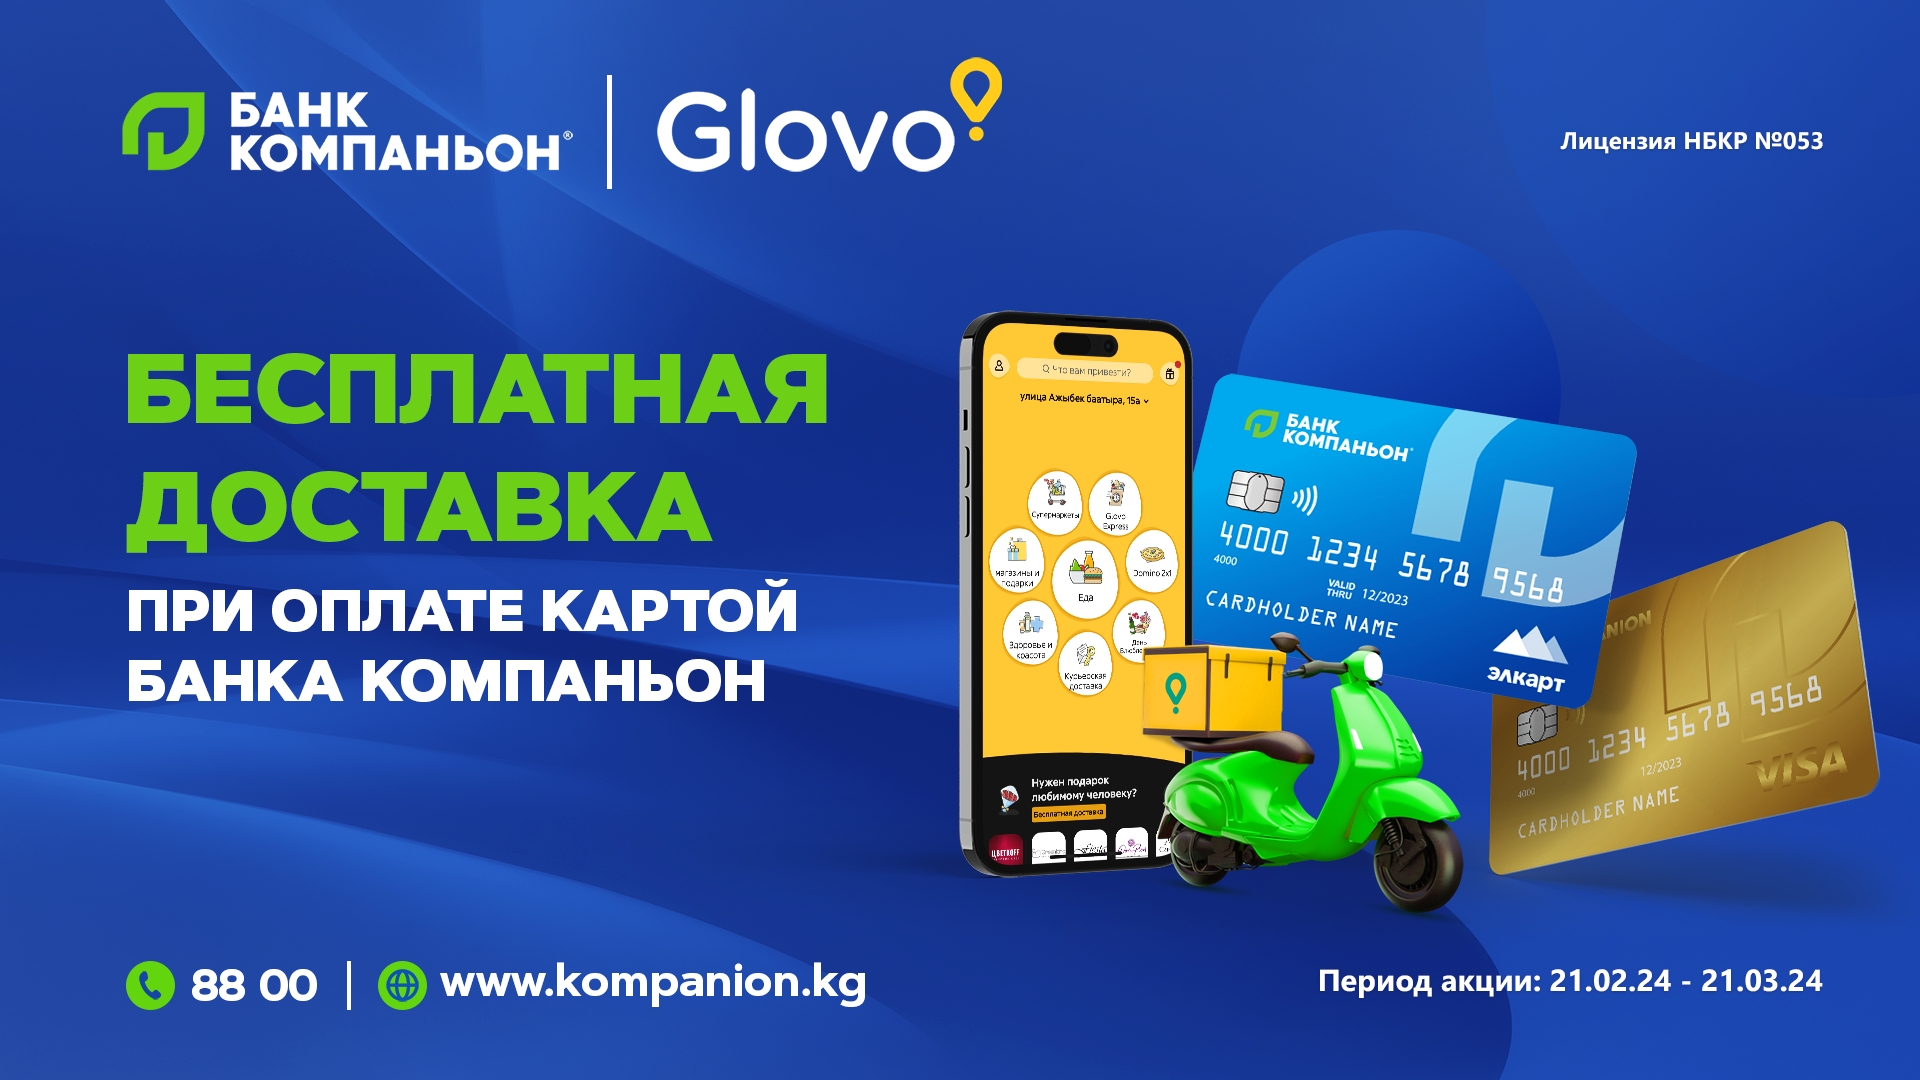 Бесплатная доставка в GLOVO при оплате картой «Банка Компаньон»